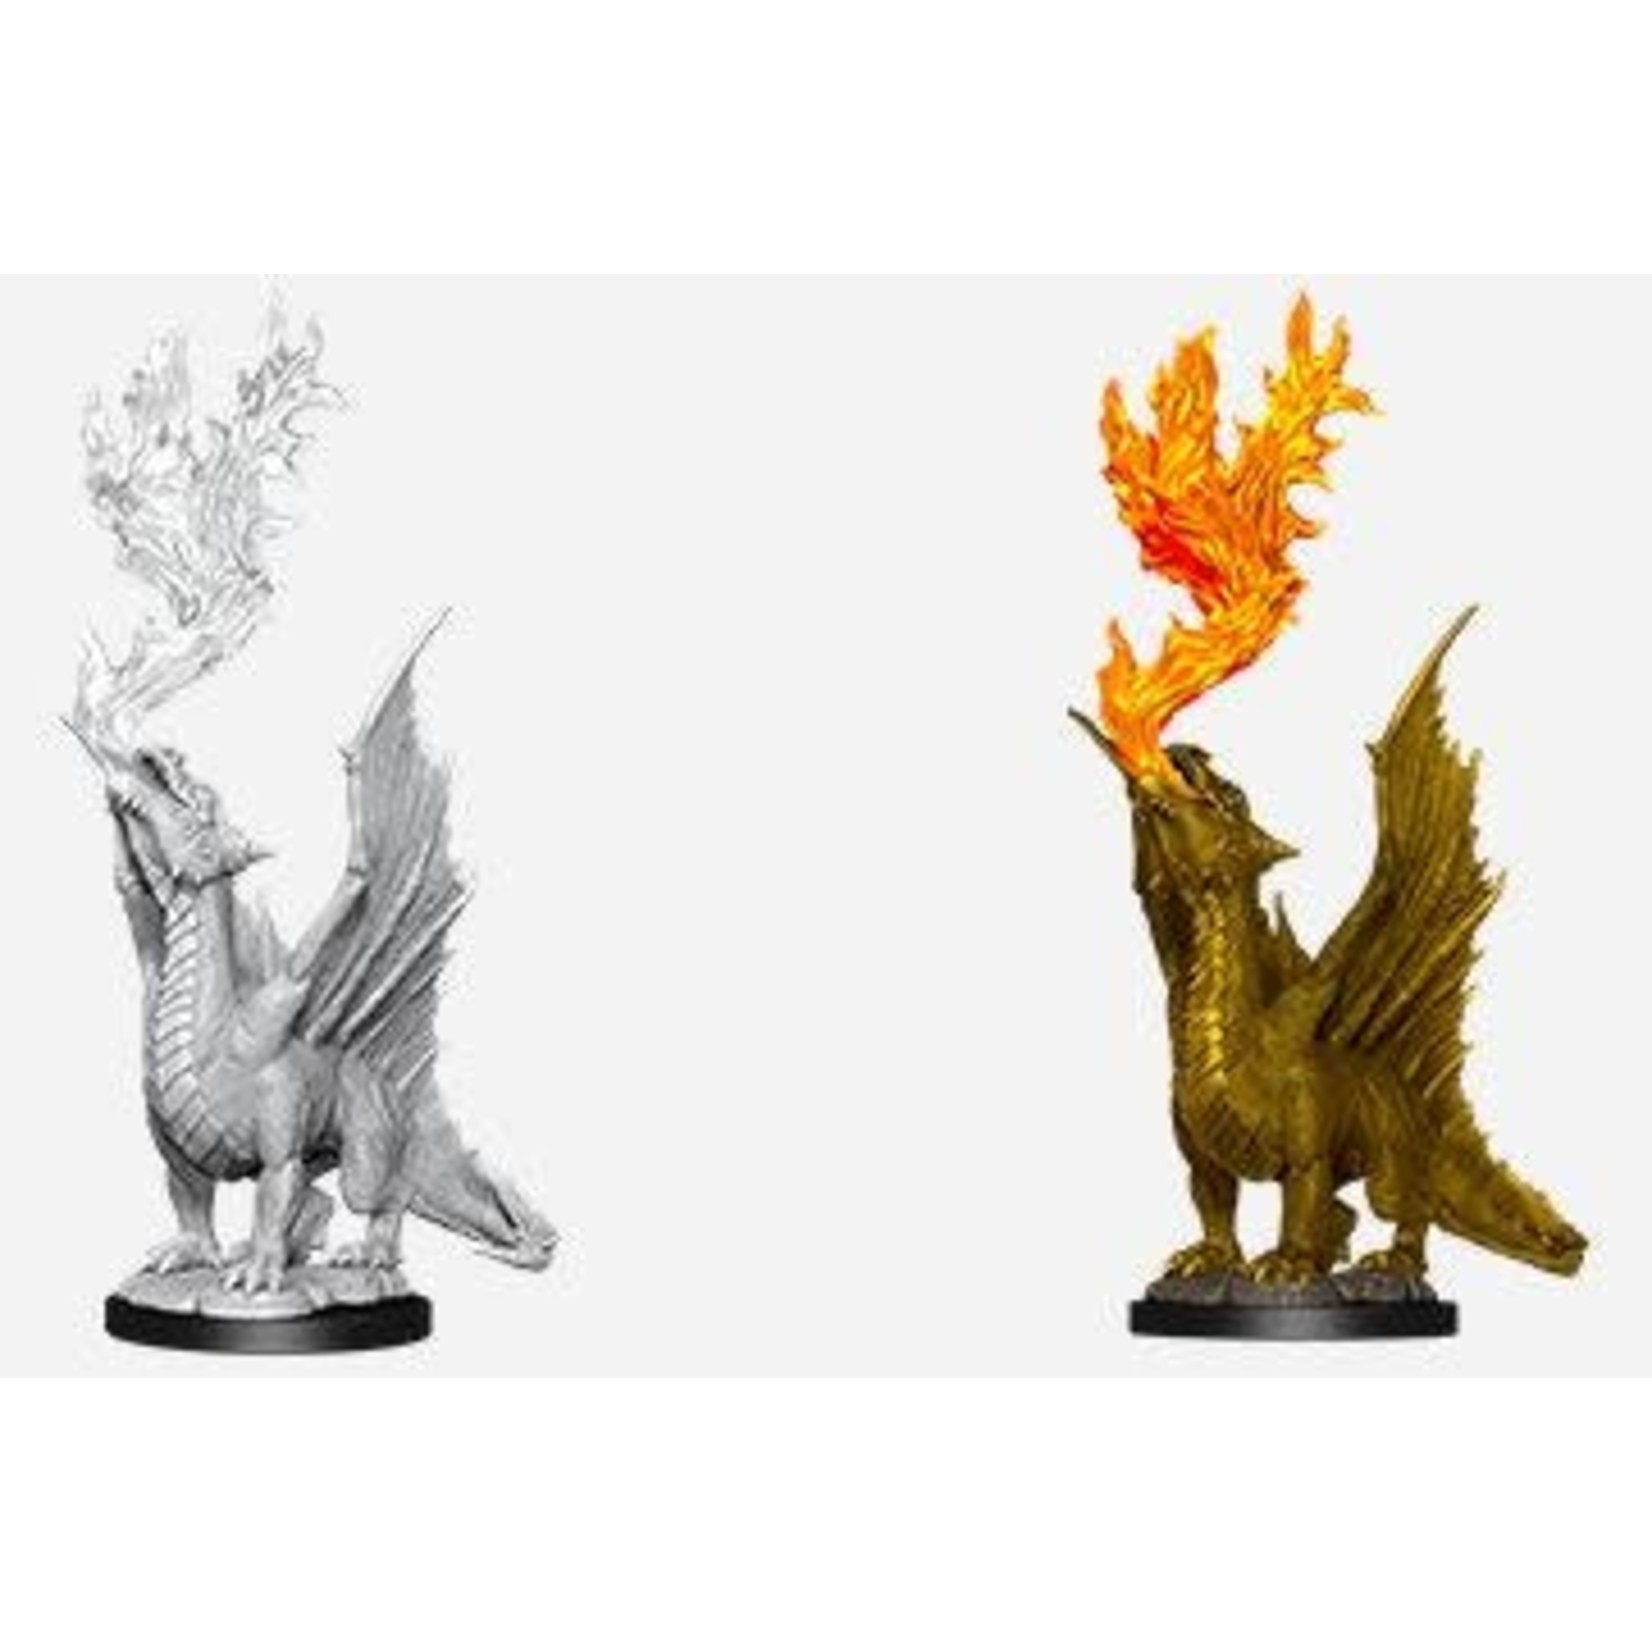 Wizkids Wizkids D&D Nolzur's Marvelous Miniatures: Gold Dragon Wyrmling & Small Treasure (2) Set